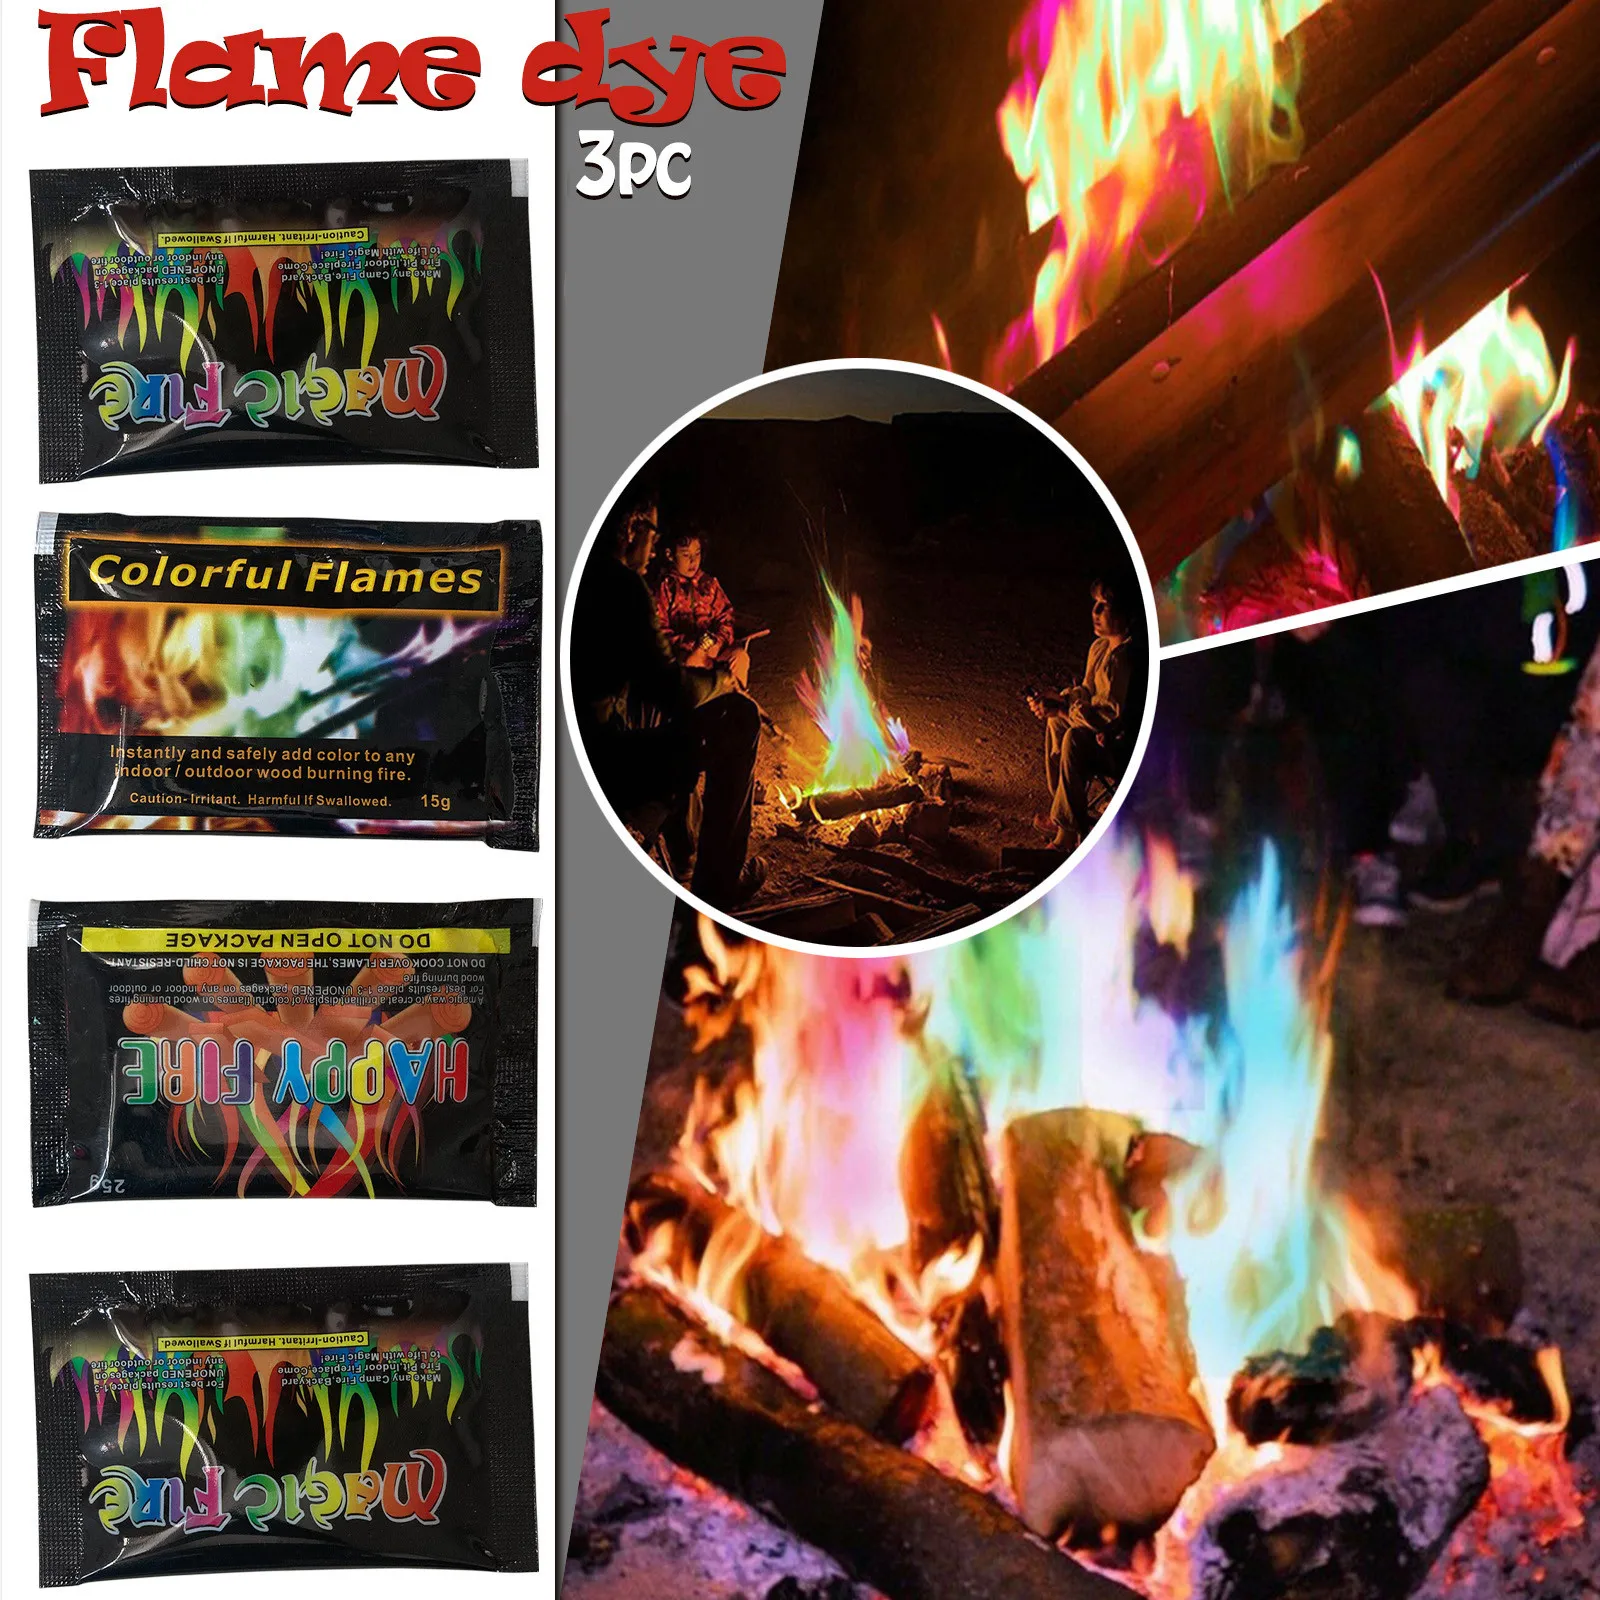 Paquetes de 30 Gramos para Fuegos de leña en Interiores o Exteriores Rianpesn Fuego místico Llamas mágicas cósmicas Llamas mágicas Multicolor Cambiador de Color de Llama Duradero 